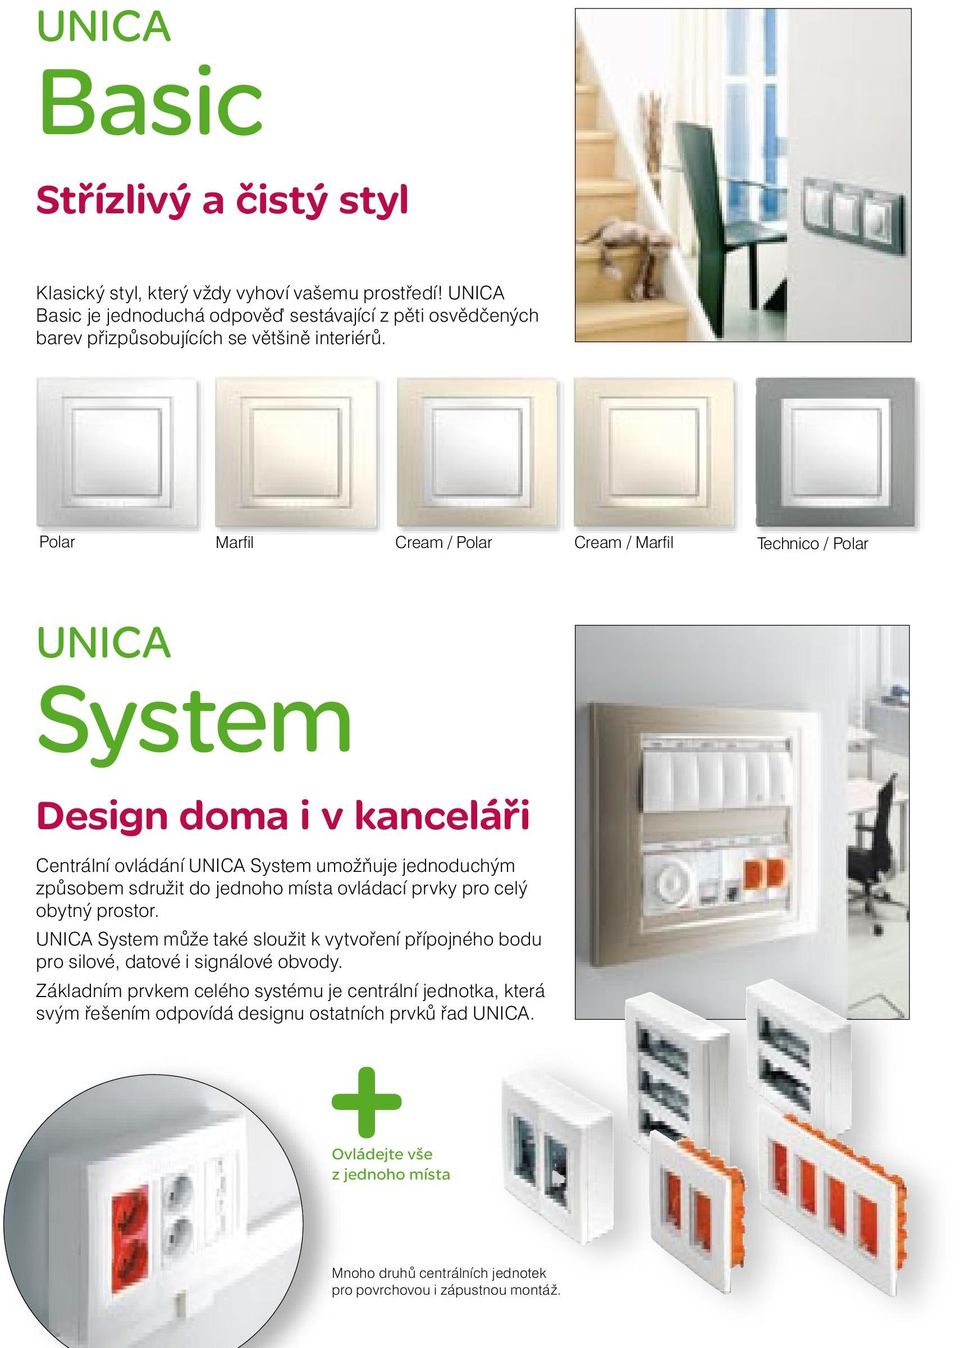 Polar Marfil Cream / Polar Cream / Marfil Technico / Polar UNICA System Design doma i v kanceláři Centrální ovládání UNICA System umožňuje jednoduchým způsobem sdružit do jednoho